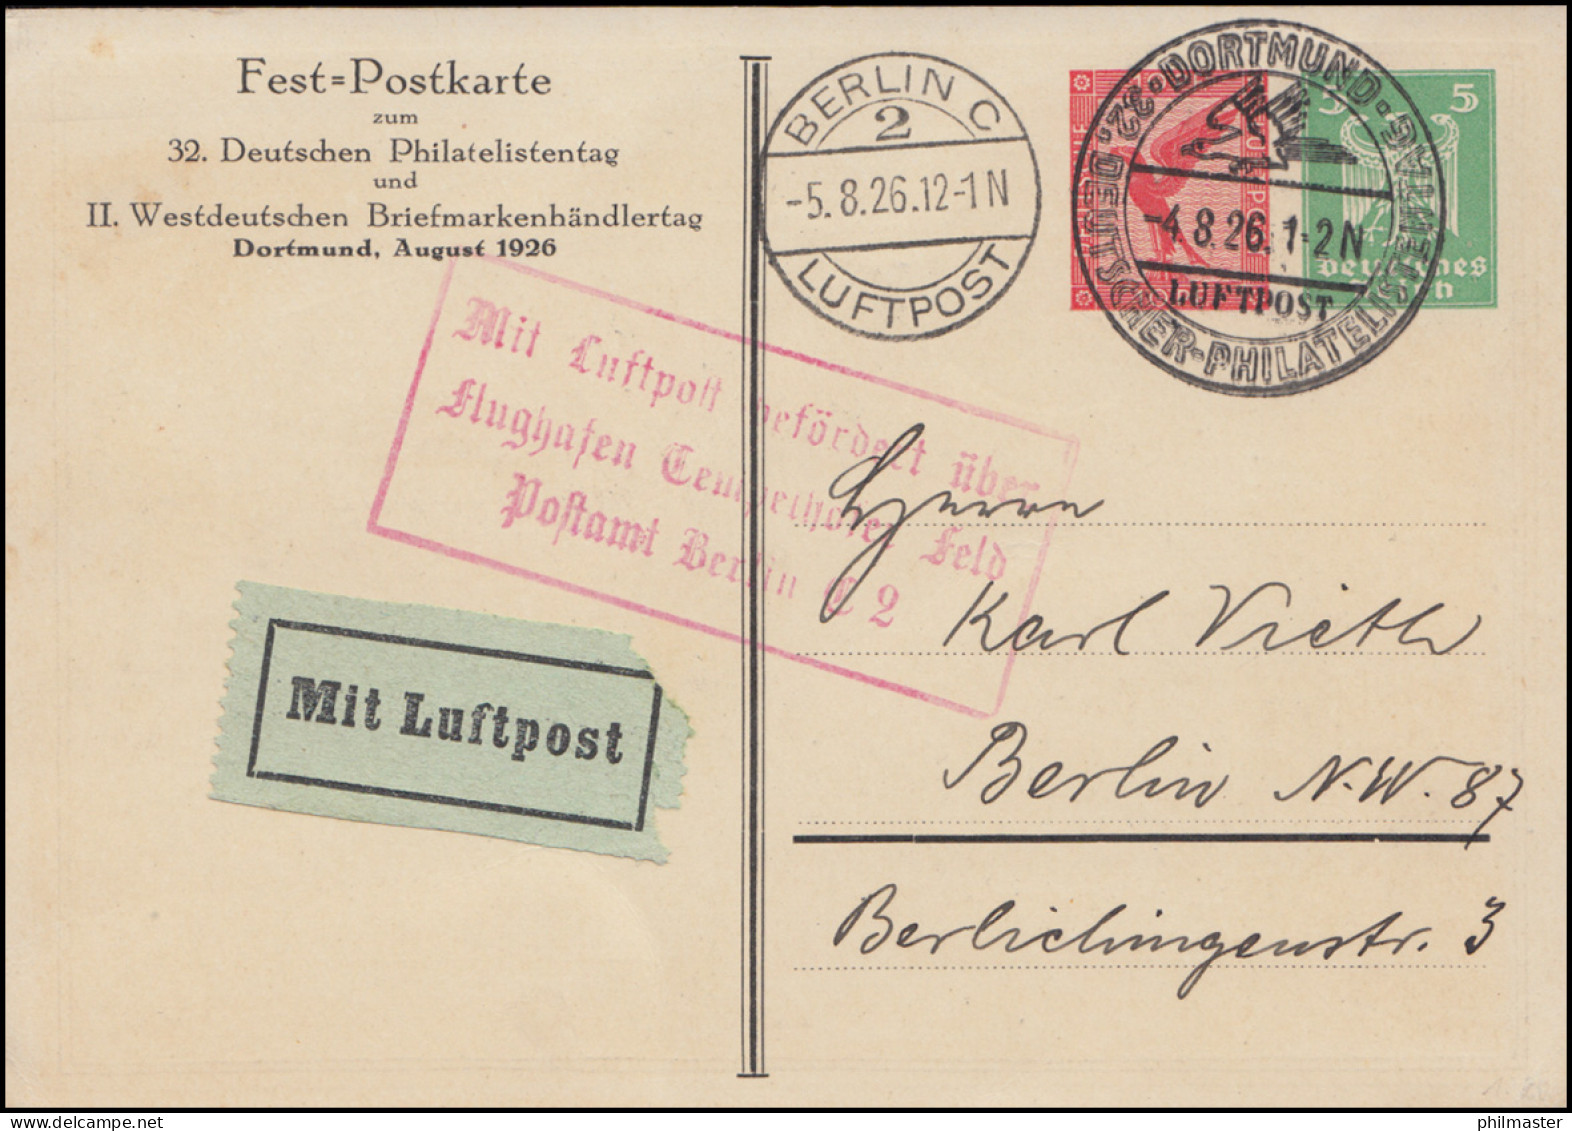 Mit Luftpost Befördert über Tempelhofer Feld Postamt Berlin SSt Dortmund 4.8.26 - Philatelic Exhibitions